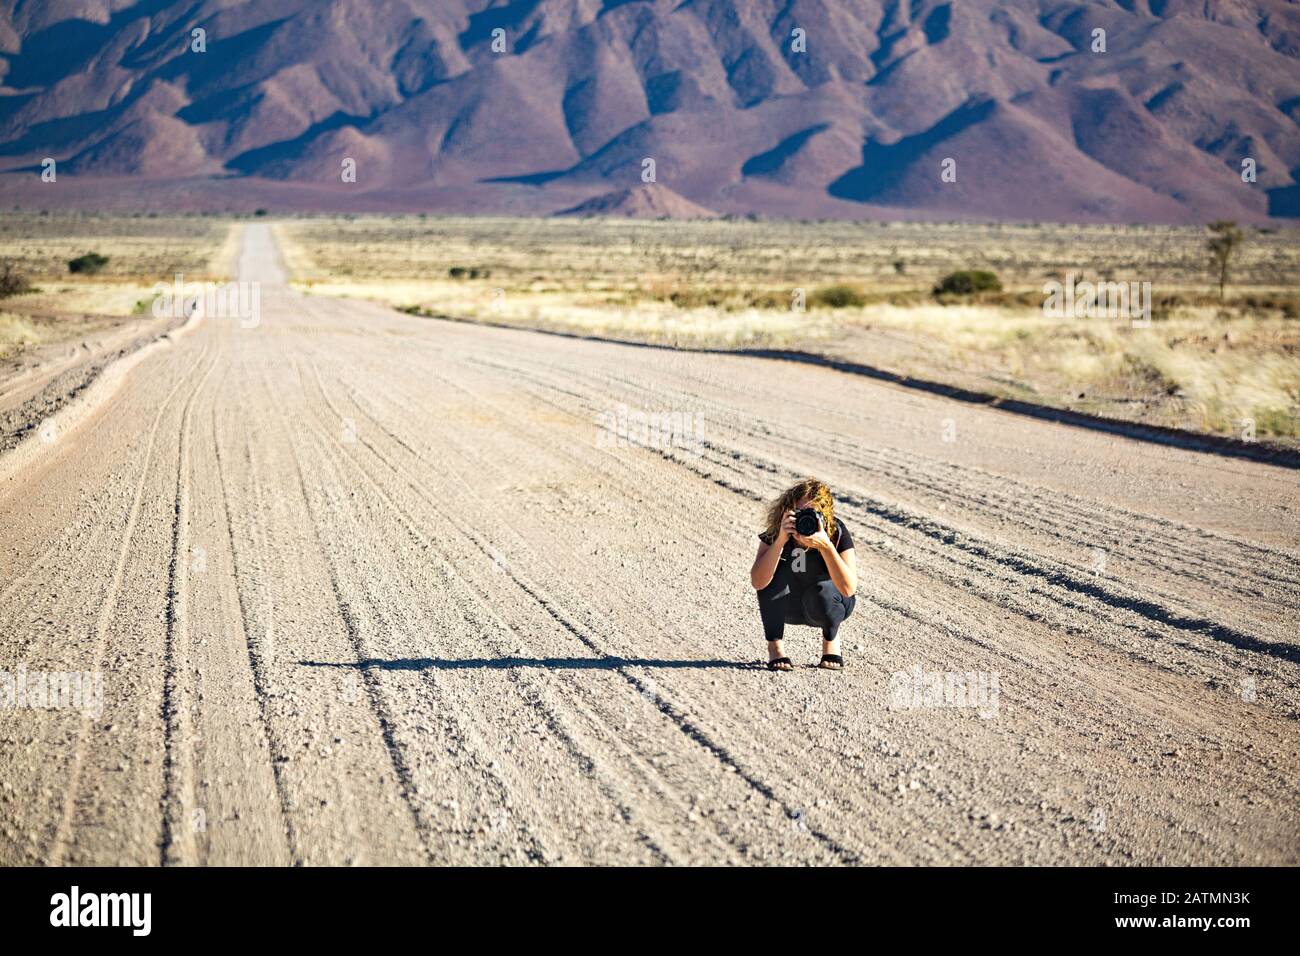 Jeune femme avec un appareil photo squatting au milieu d'une route de gravier qui mène à un paysage montagneux près de Spretshoogte Pass, Namibie, Afrique Banque D'Images